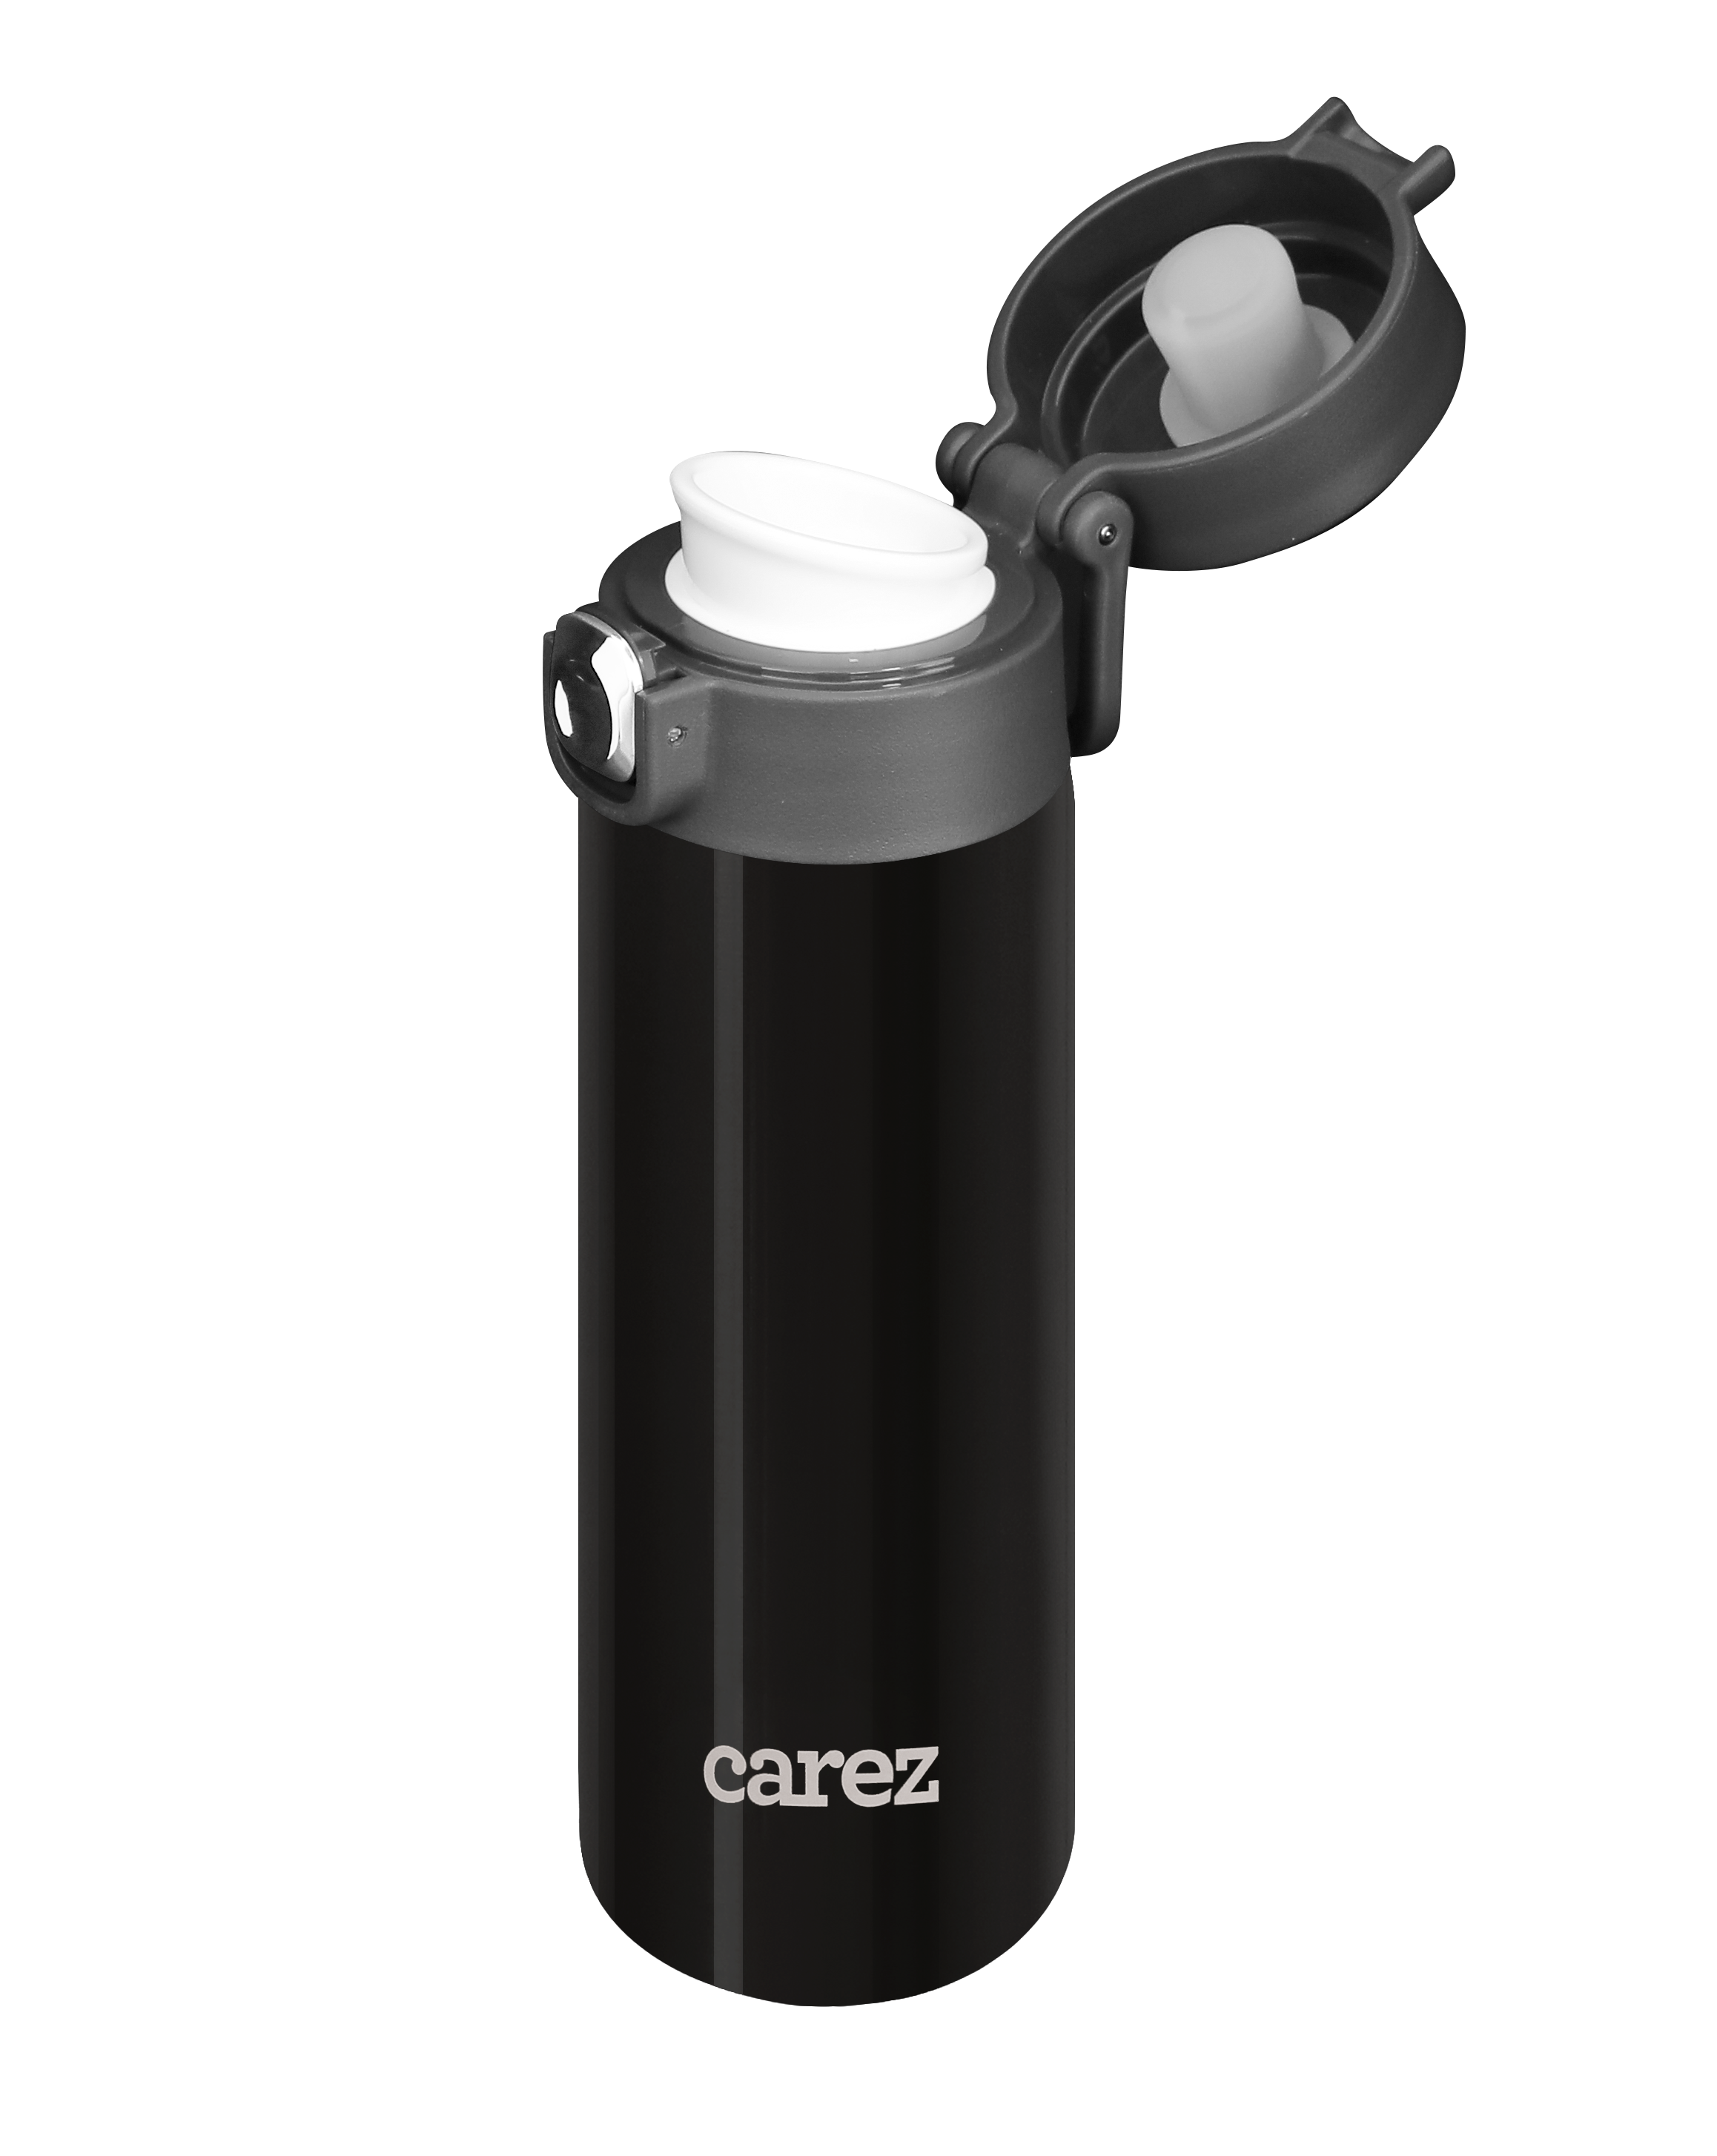 Bình Giữ Nhiệt Carez IBC416SK420N - Đen - 420ml, Inox 316, Không chứa BPA - Giữ nóng đến 7 tiếng, giữ lạnh đến 18 tiếng - Hàng chính hãng